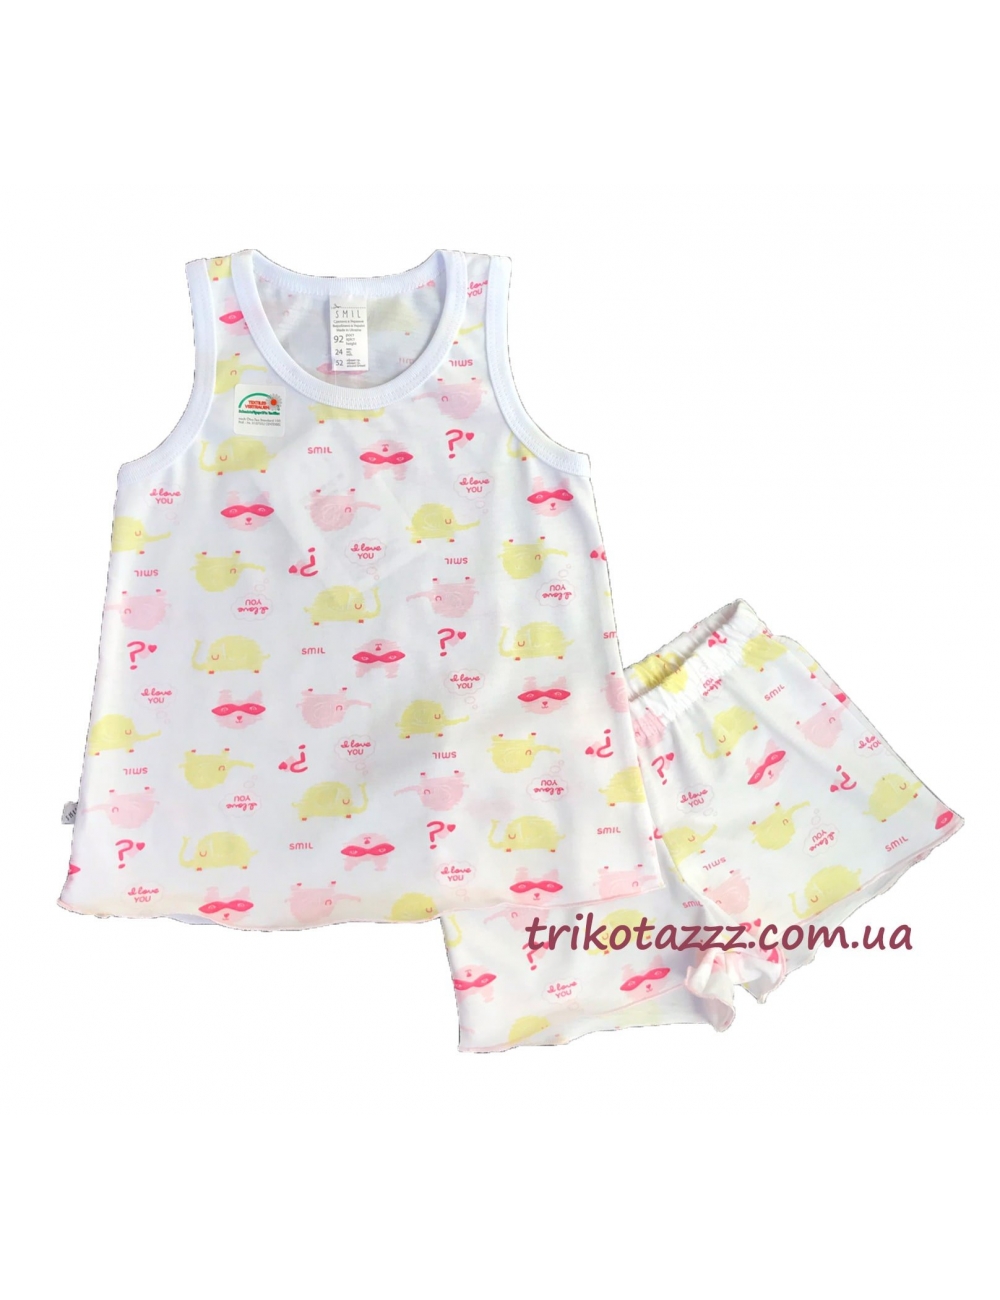 Детская летняя пижама для девочки тм"Смил" Маски розовые